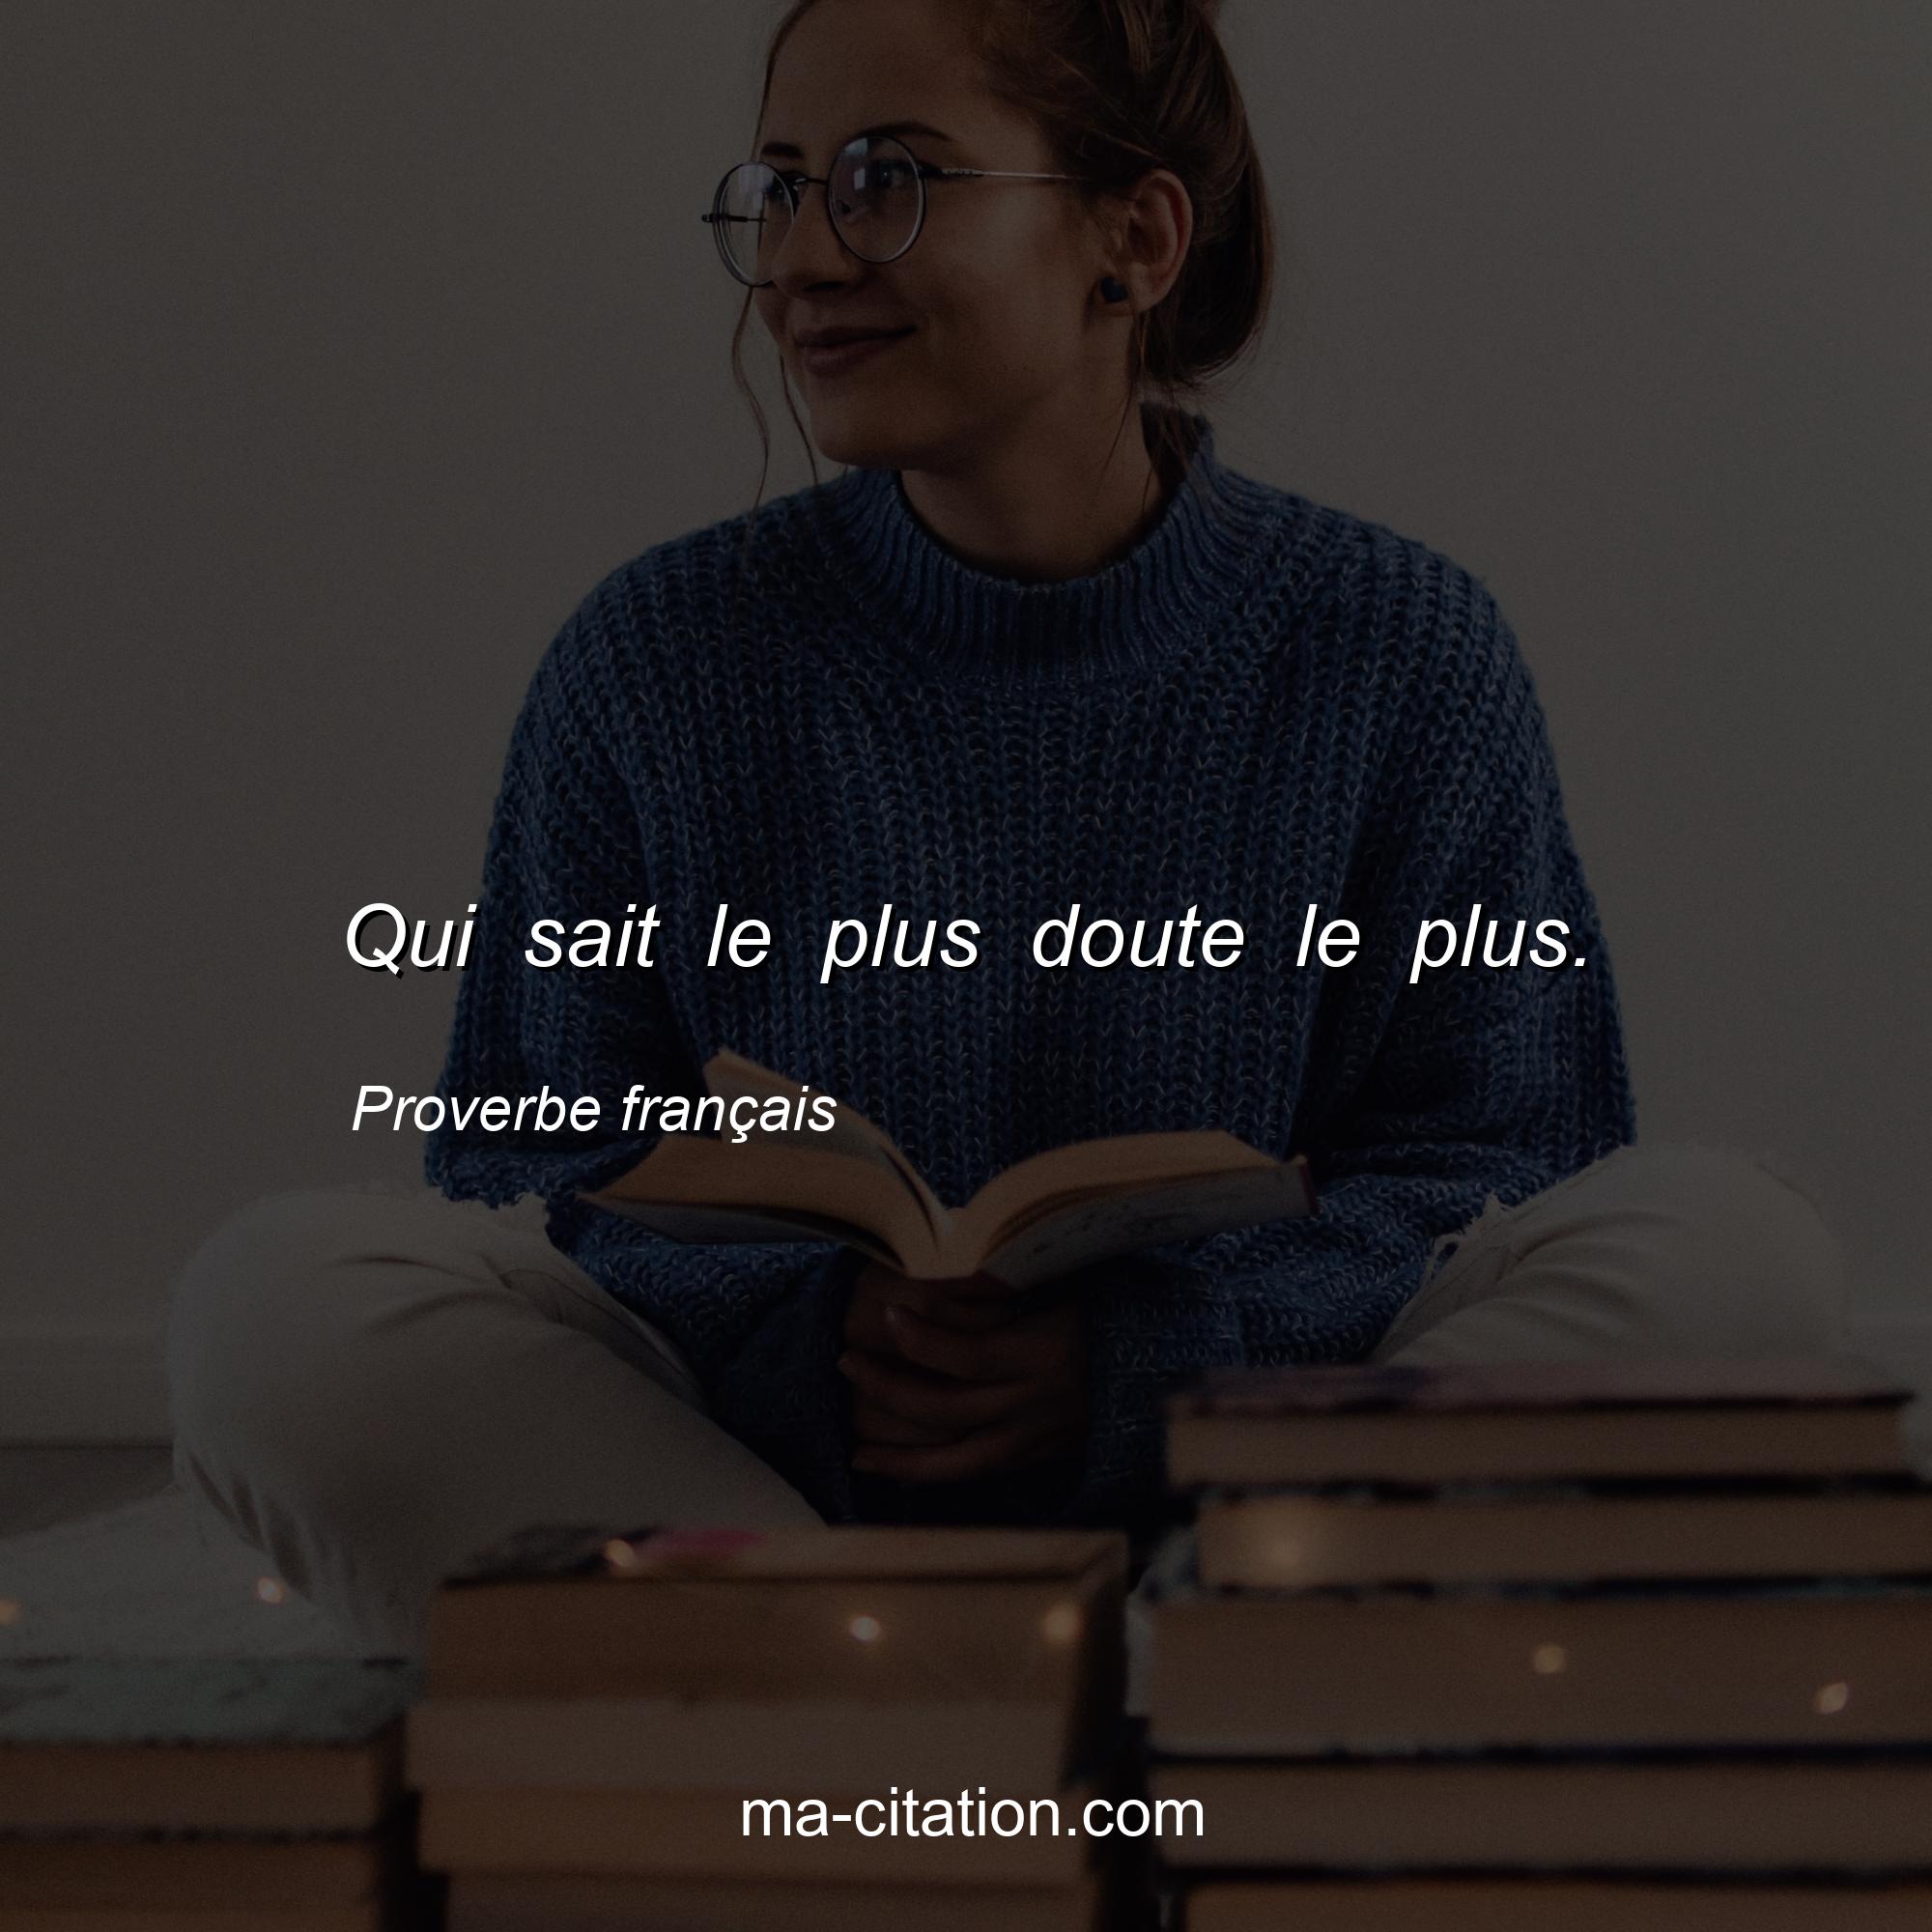 Proverbe français : Qui sait le plus doute le plus.